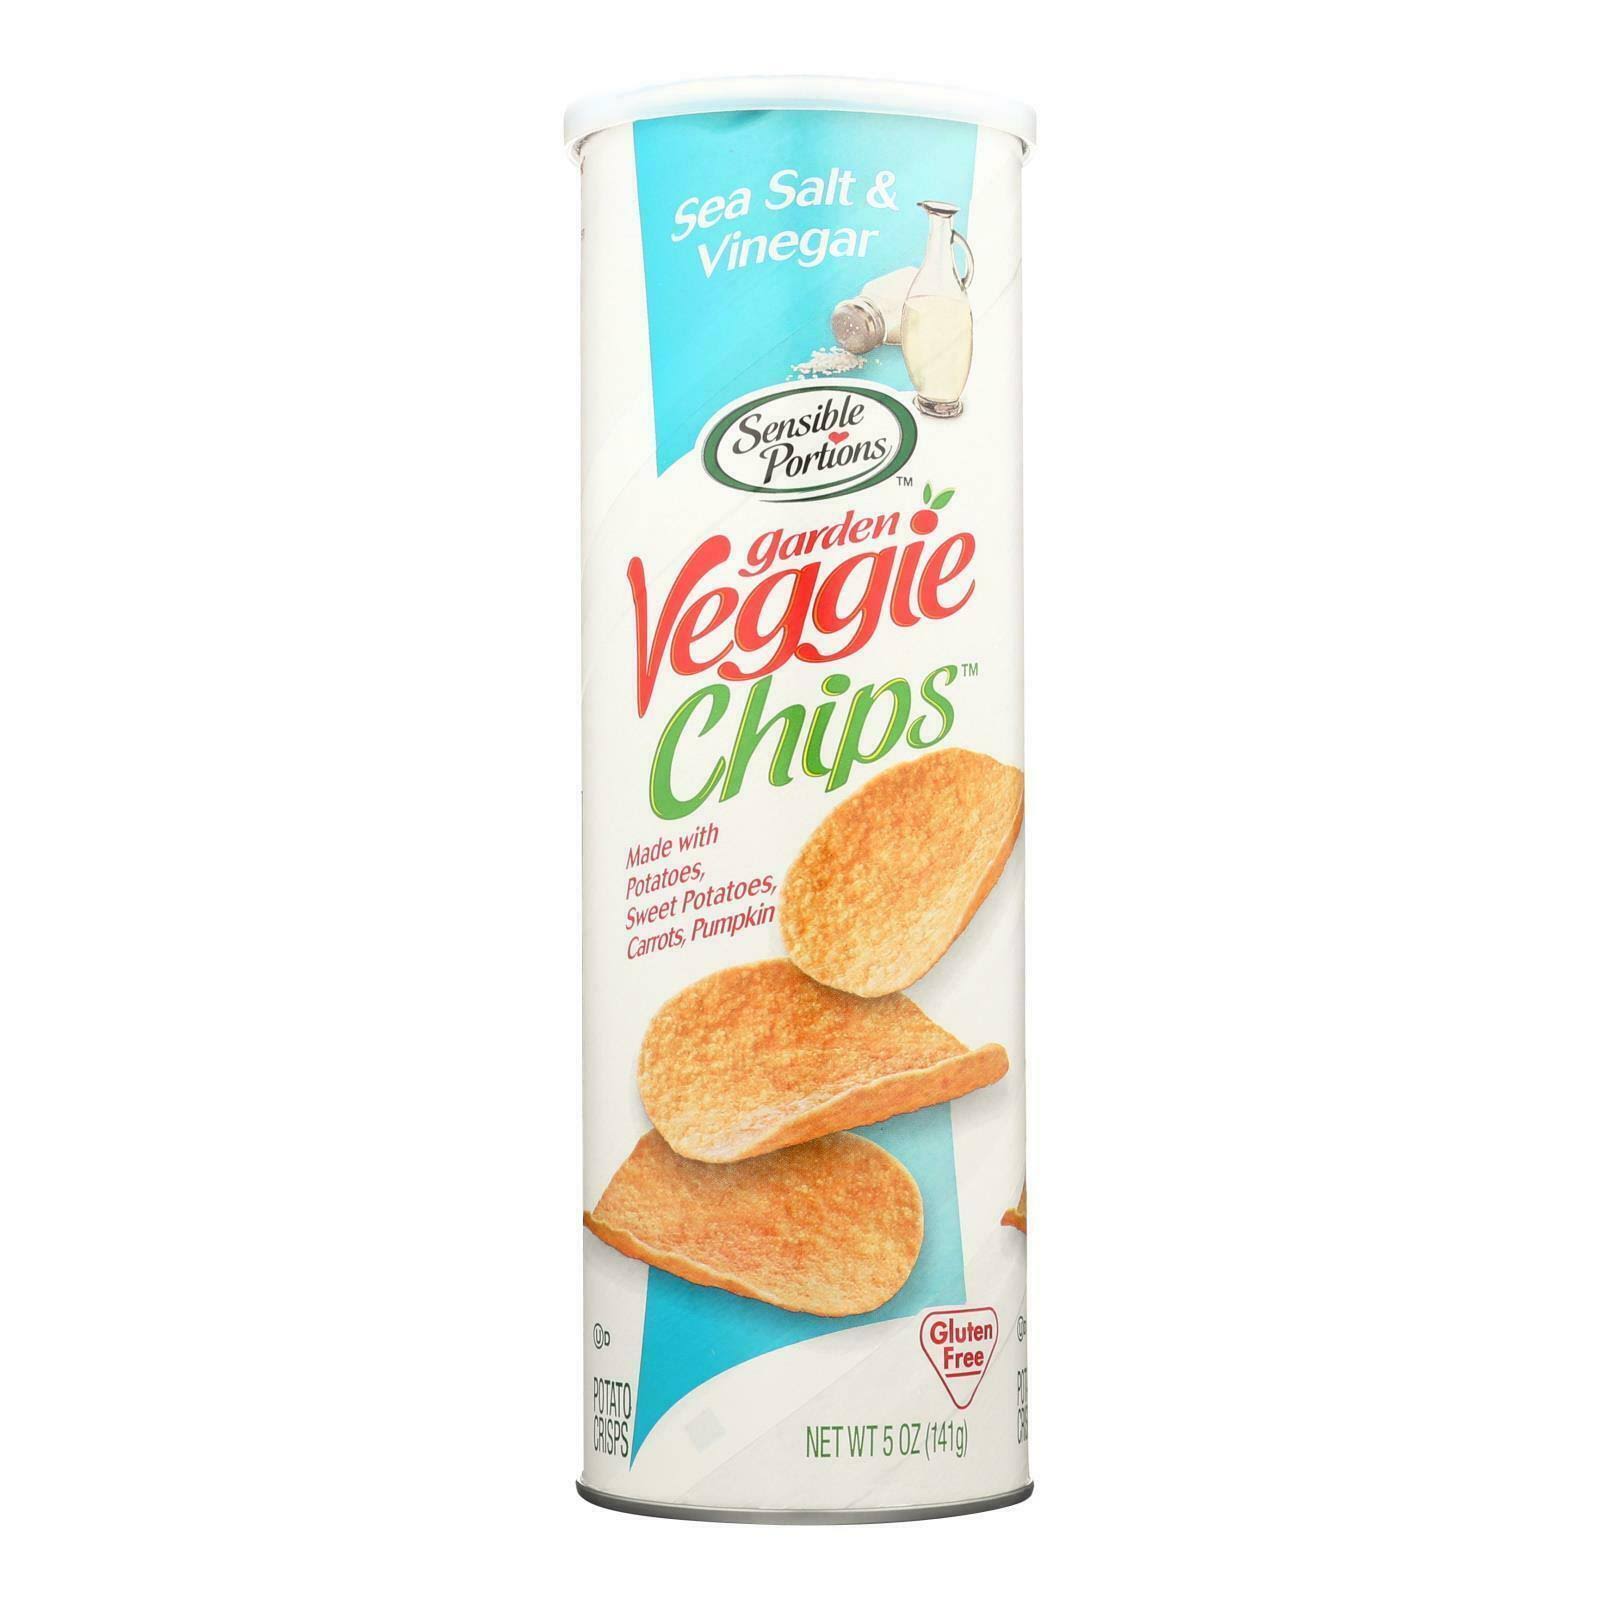 Sensible Portions Gargen Veggie Chips - Sea Salt and Vinegar, 5oz